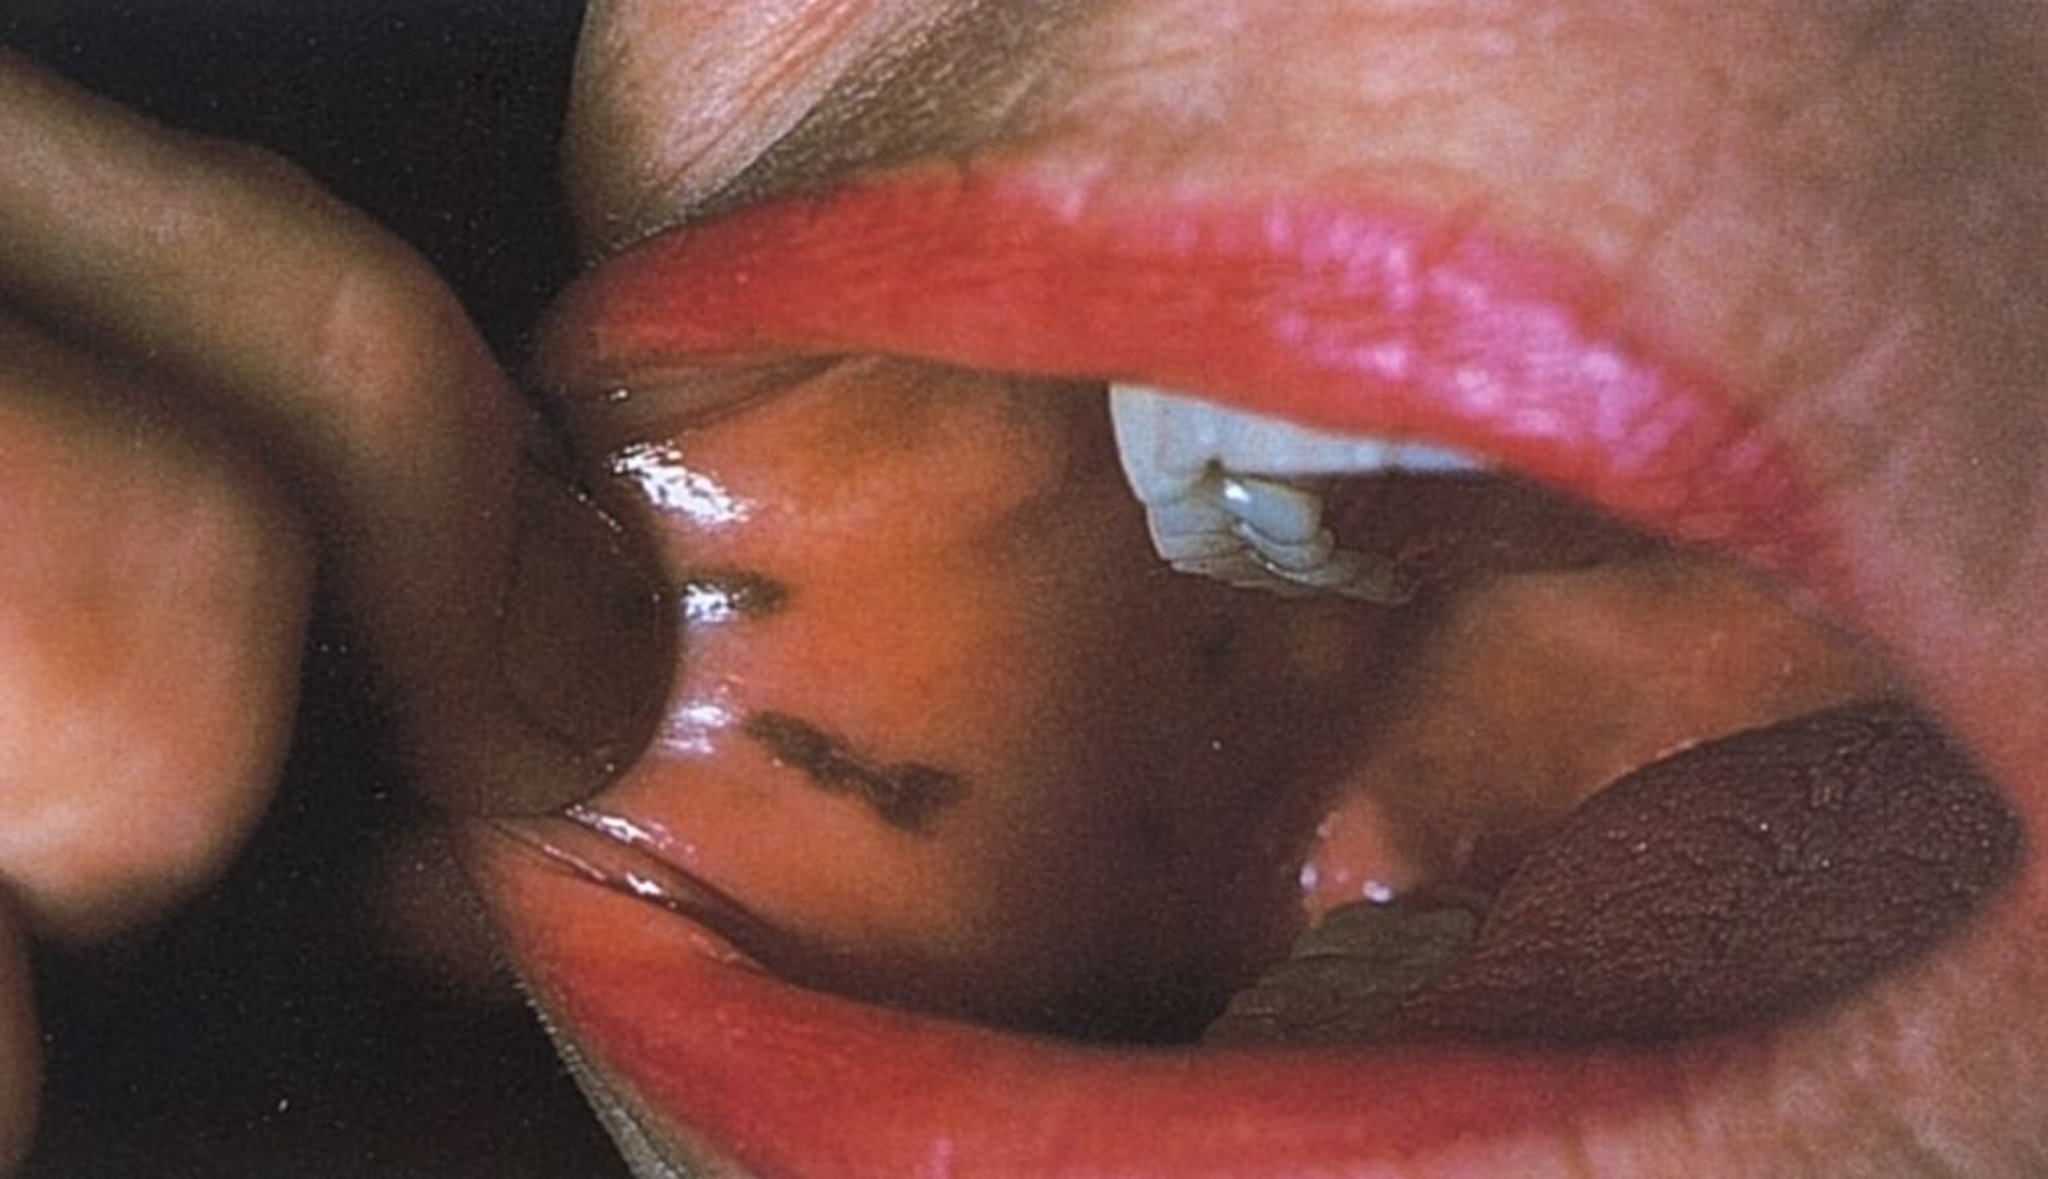 मुंह के अंदर नीले-काले रंग के धब्बे (प्यूट्ज़-जेगर्स सिंड्रोम)